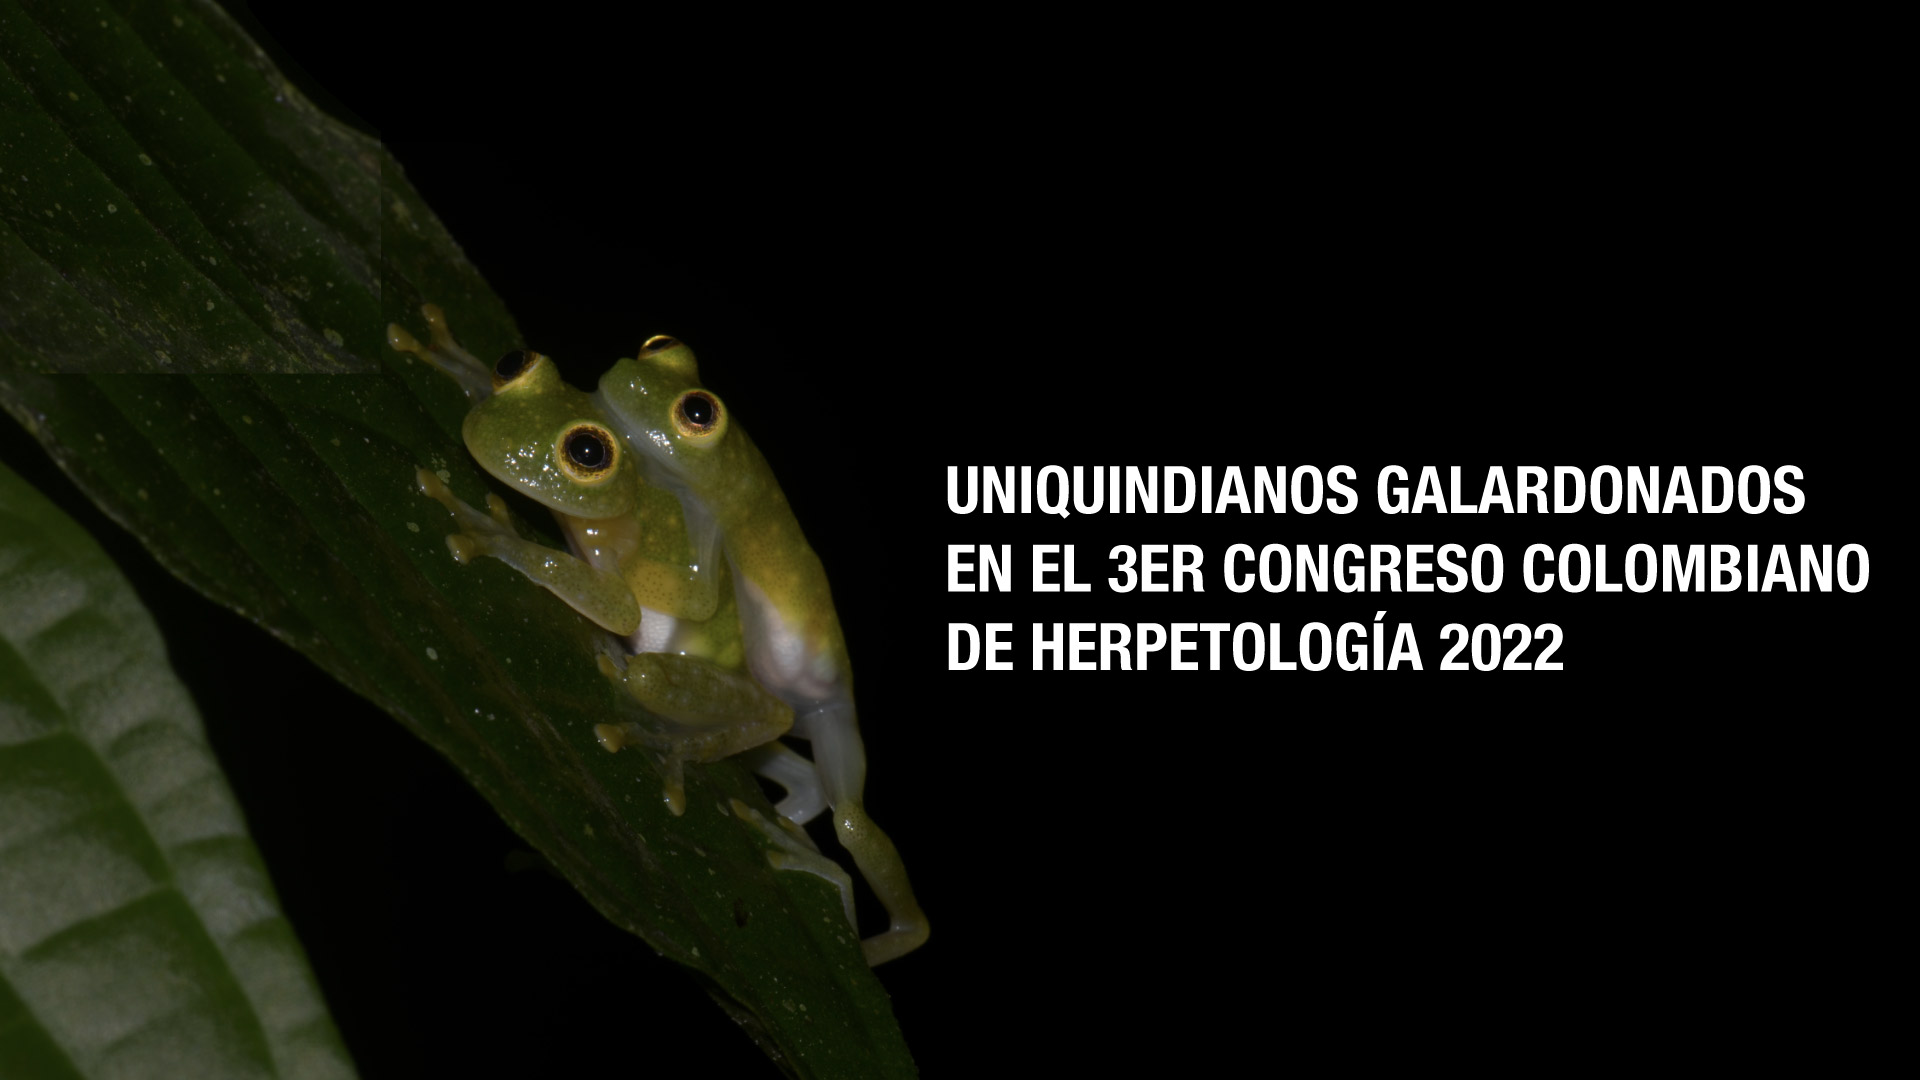 Uniquindianos galardonados en el 3er Congreso Colombiano de Herpetología 2022